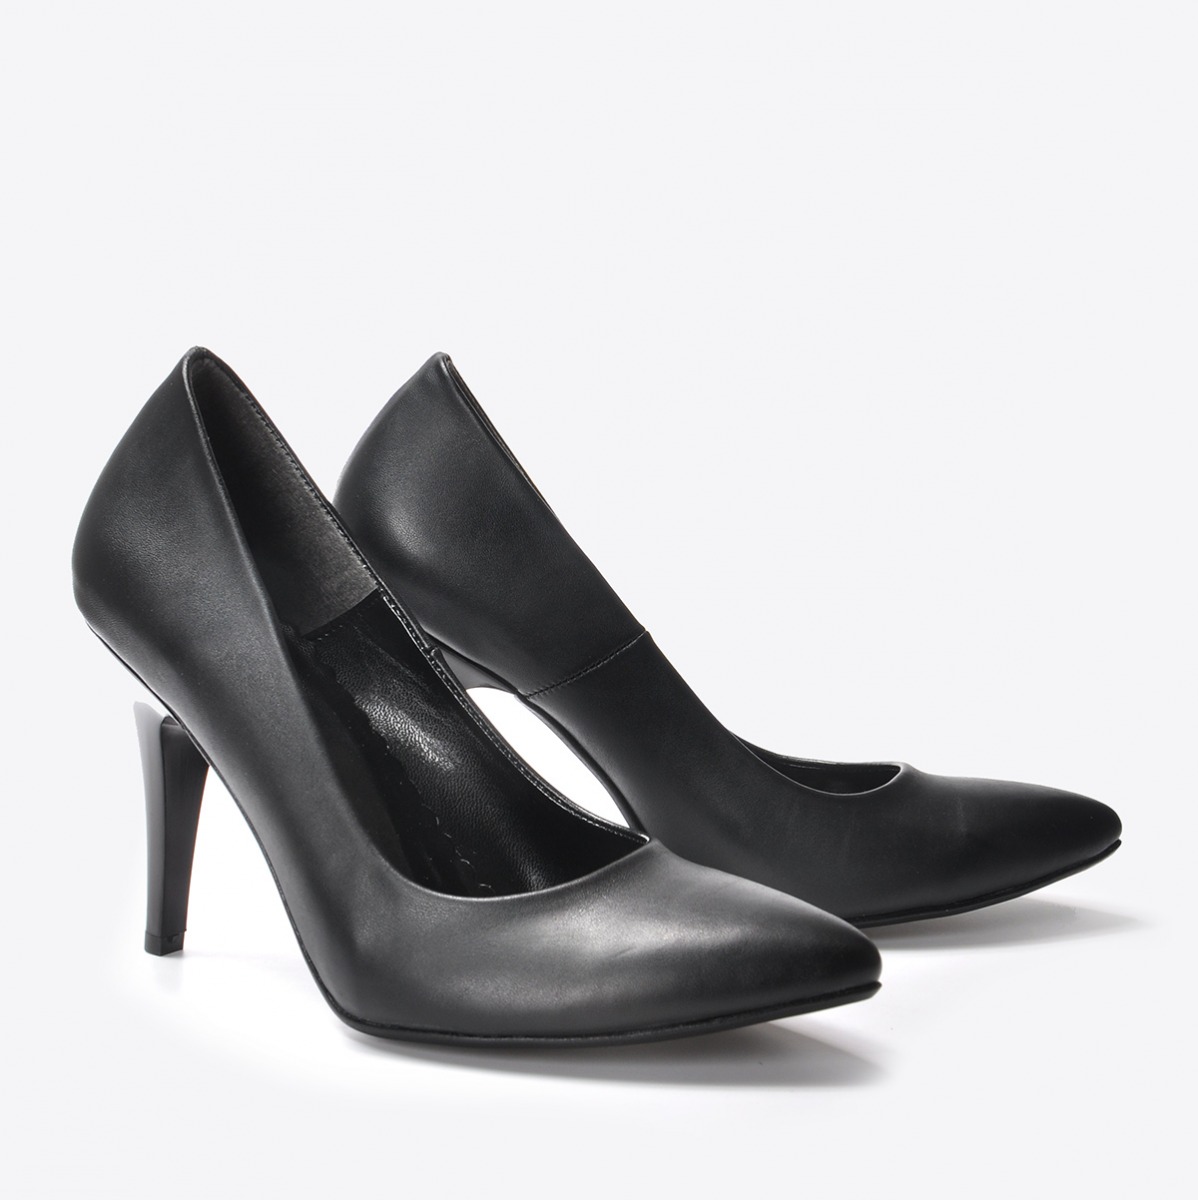 Flo Kadın Siyah Klasik Topuklu Ayakkabı VZN20-170Y. 4